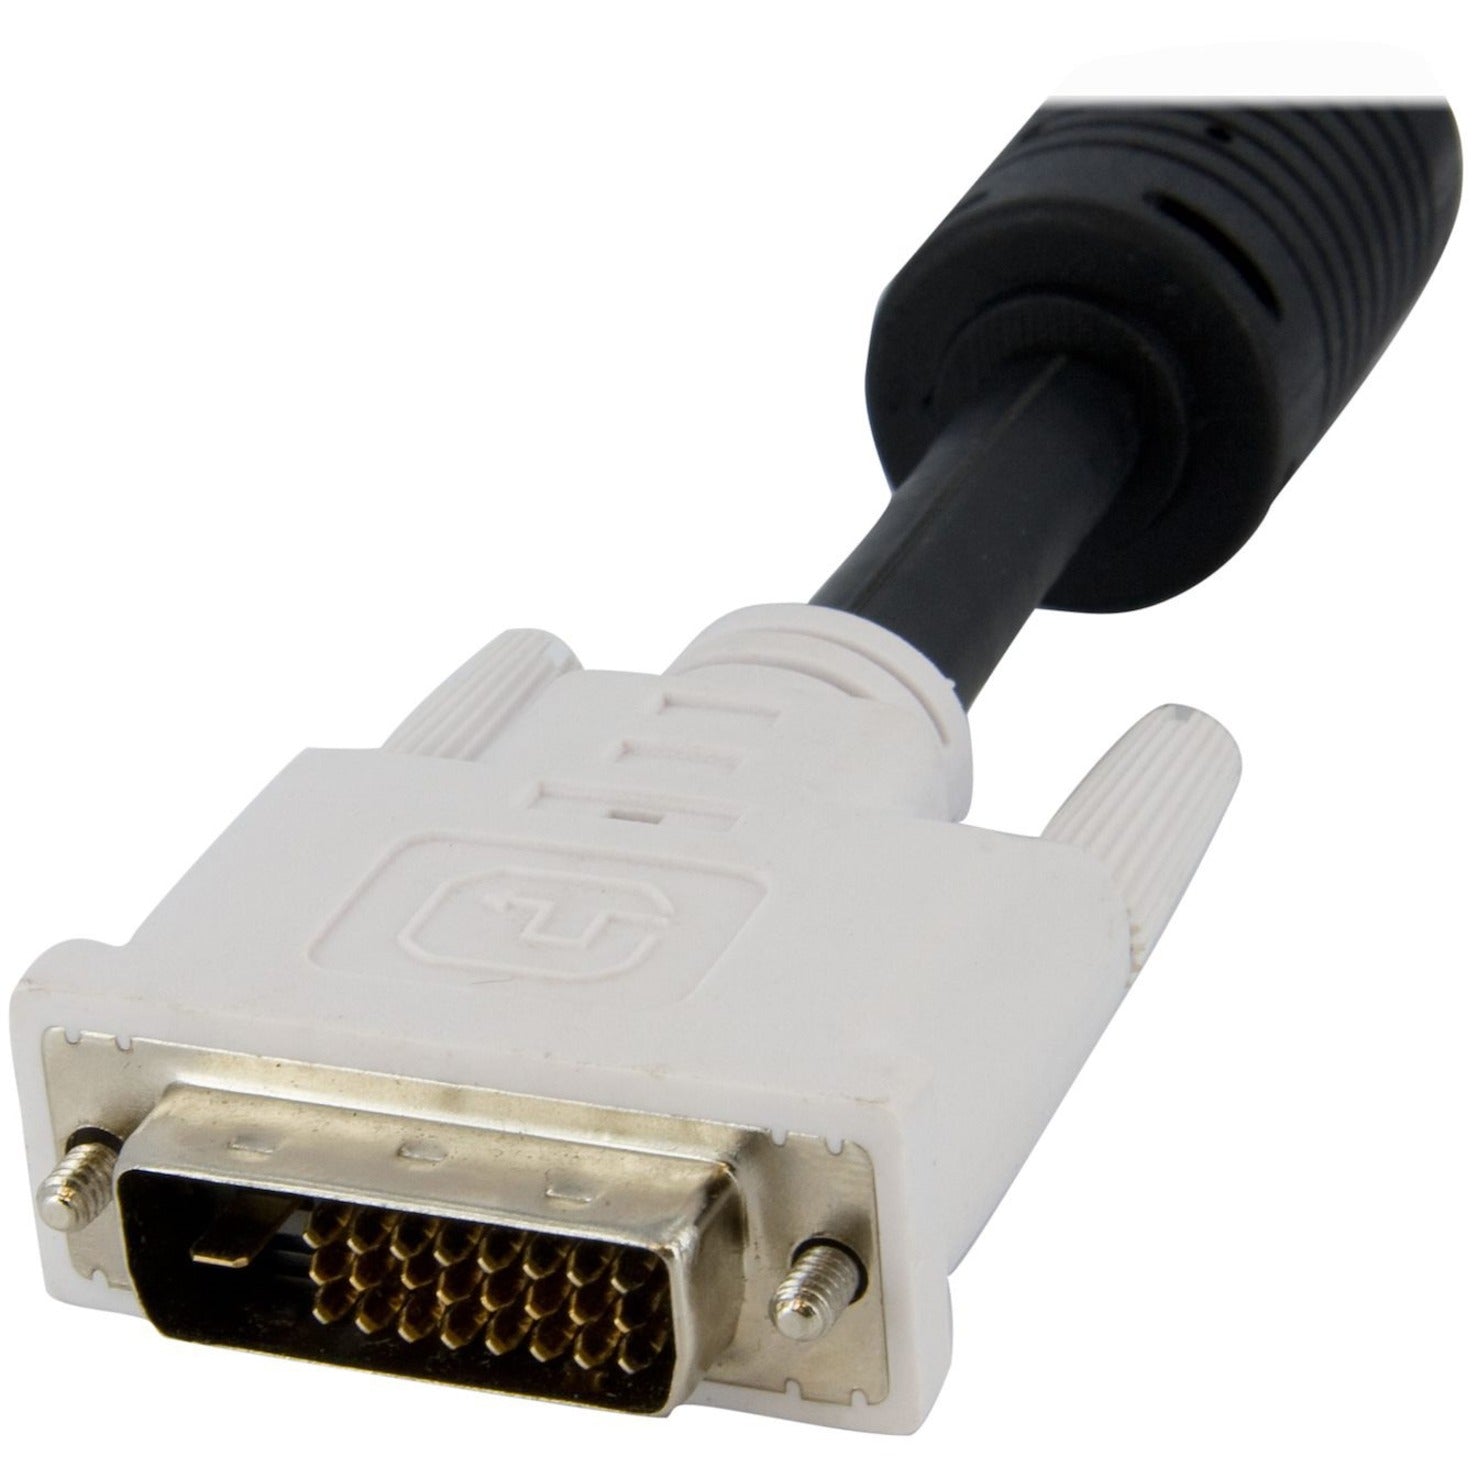 星科科技 StarTech.com 双链DVI-D KVM切换电缆（带音频和麦克风），铜导体，7.9 Gbit/s数据传输速率【已停产】